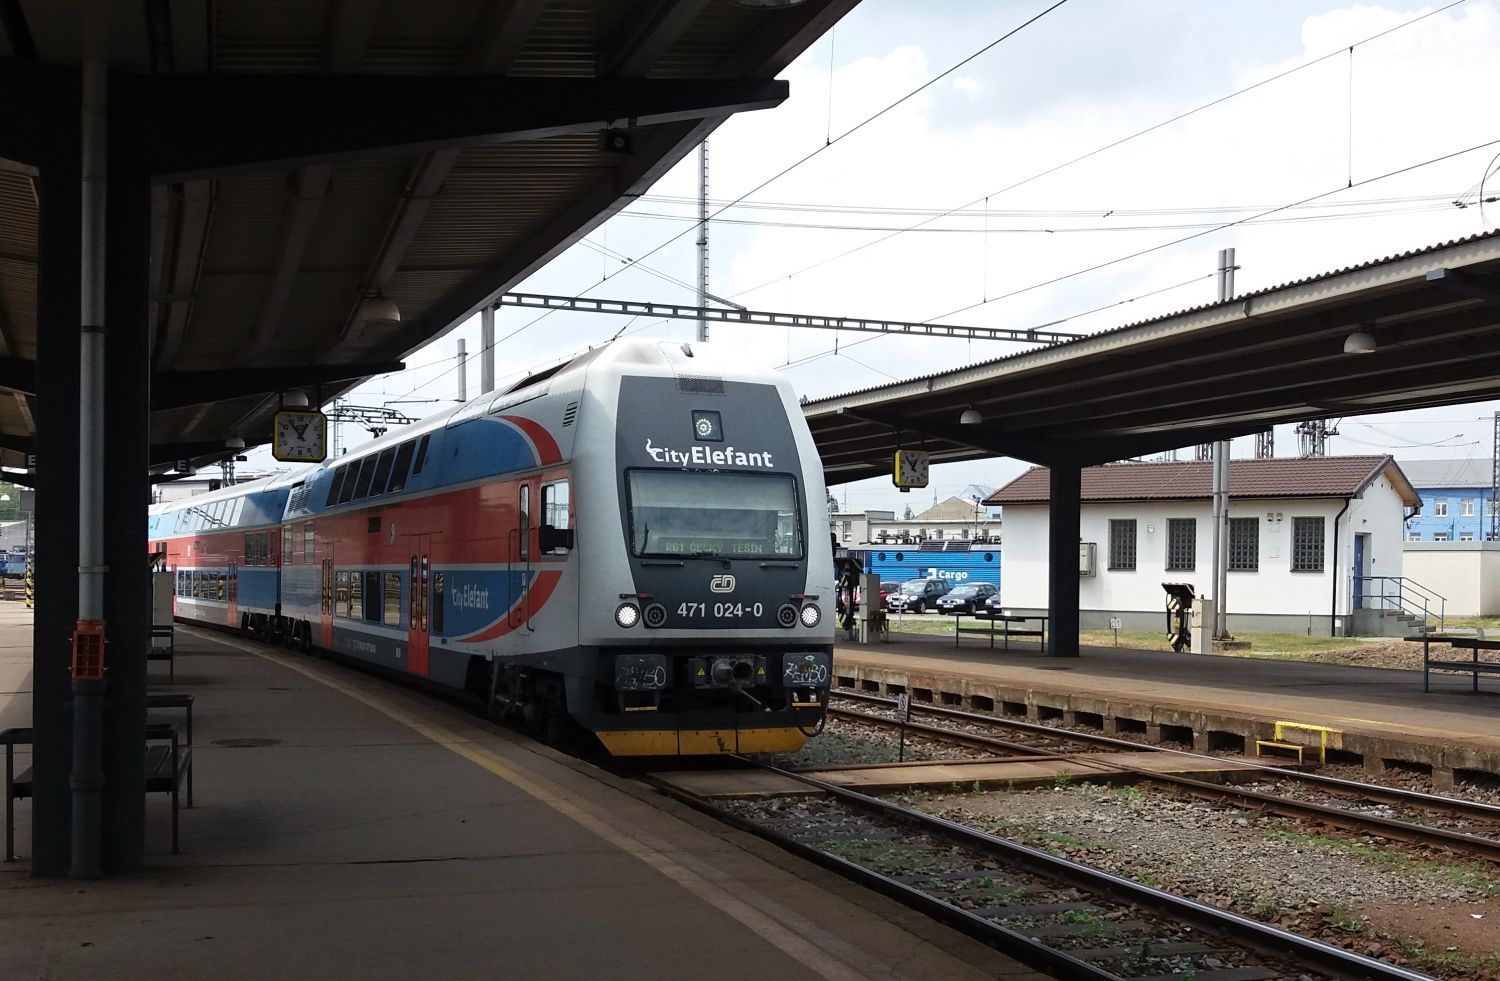 České dráhy, příměstský vlak, železnice, City Elefant, Ostrava hlavní nádraží